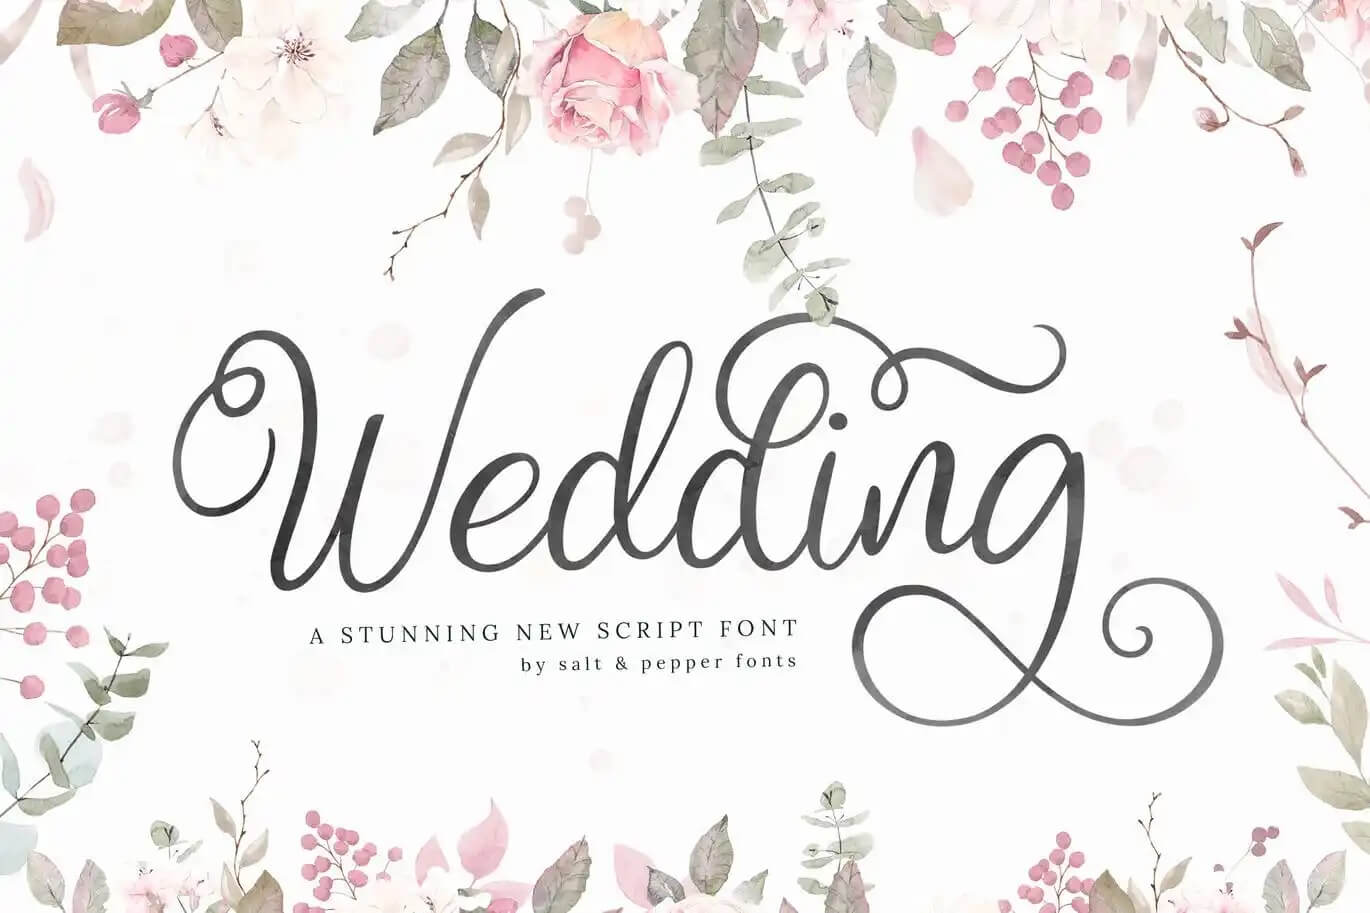 Tải Font Wedding việt hóa – Phông chữ ảnh, thiệp cưới tuyệt đẹp